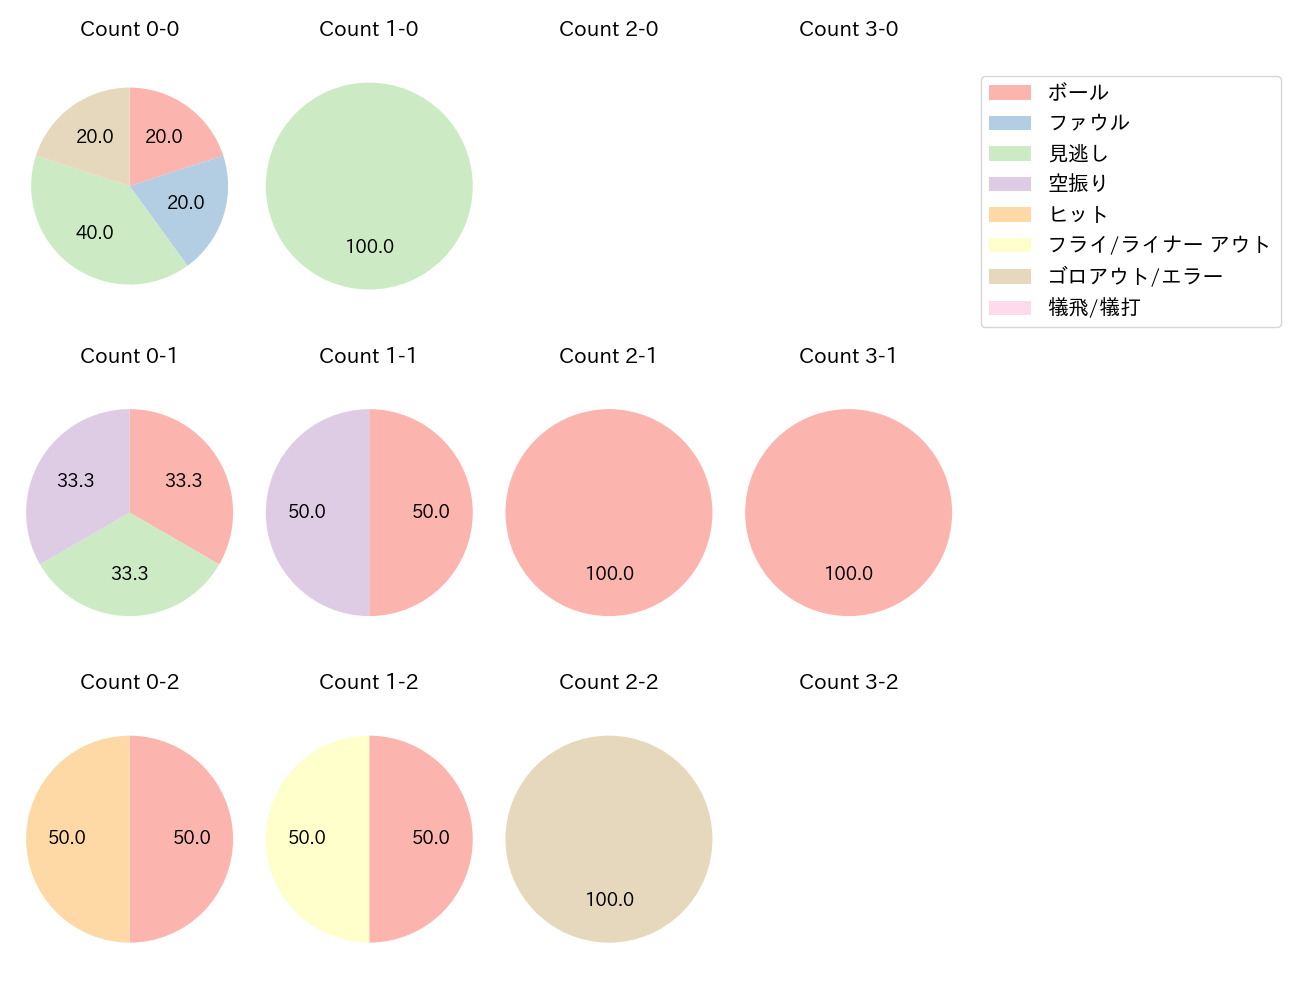 和田 康士朗の球数分布(2021年10月)